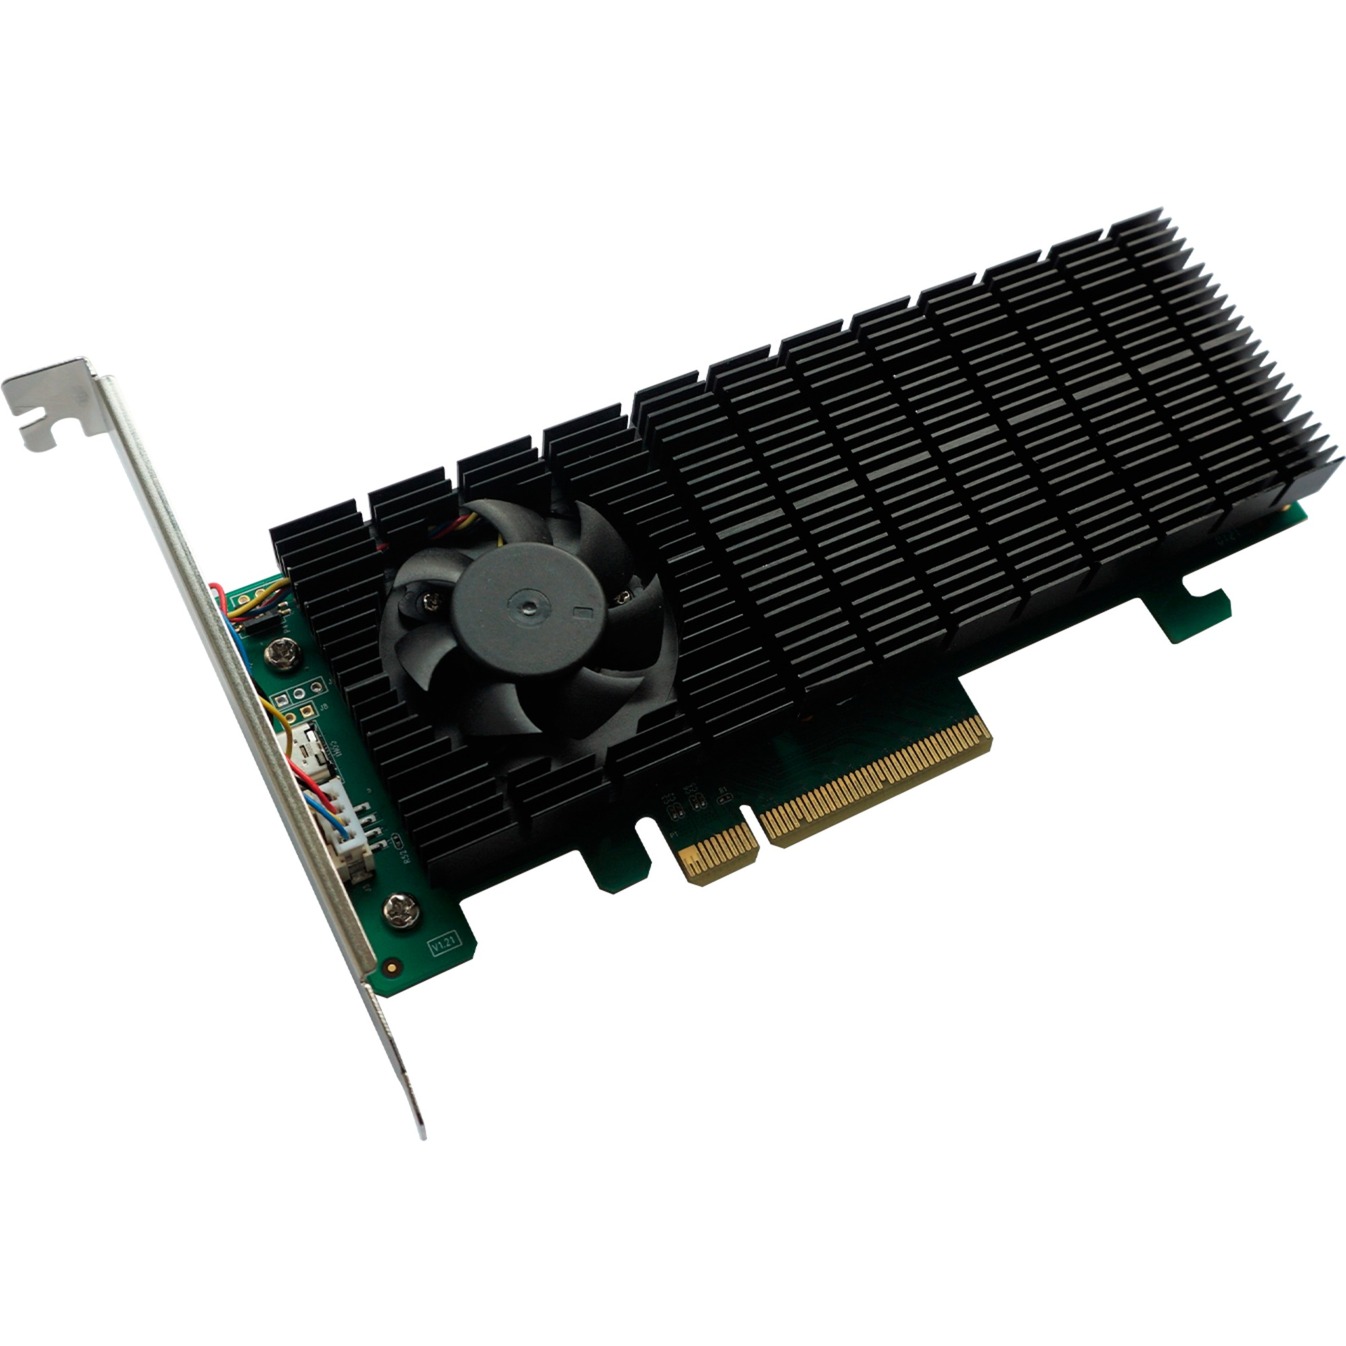 Image of Alternate - SSD6202 PCIe 3.0 x8 2-Port M.2 NVMe, RAID-Karte online einkaufen bei Alternate